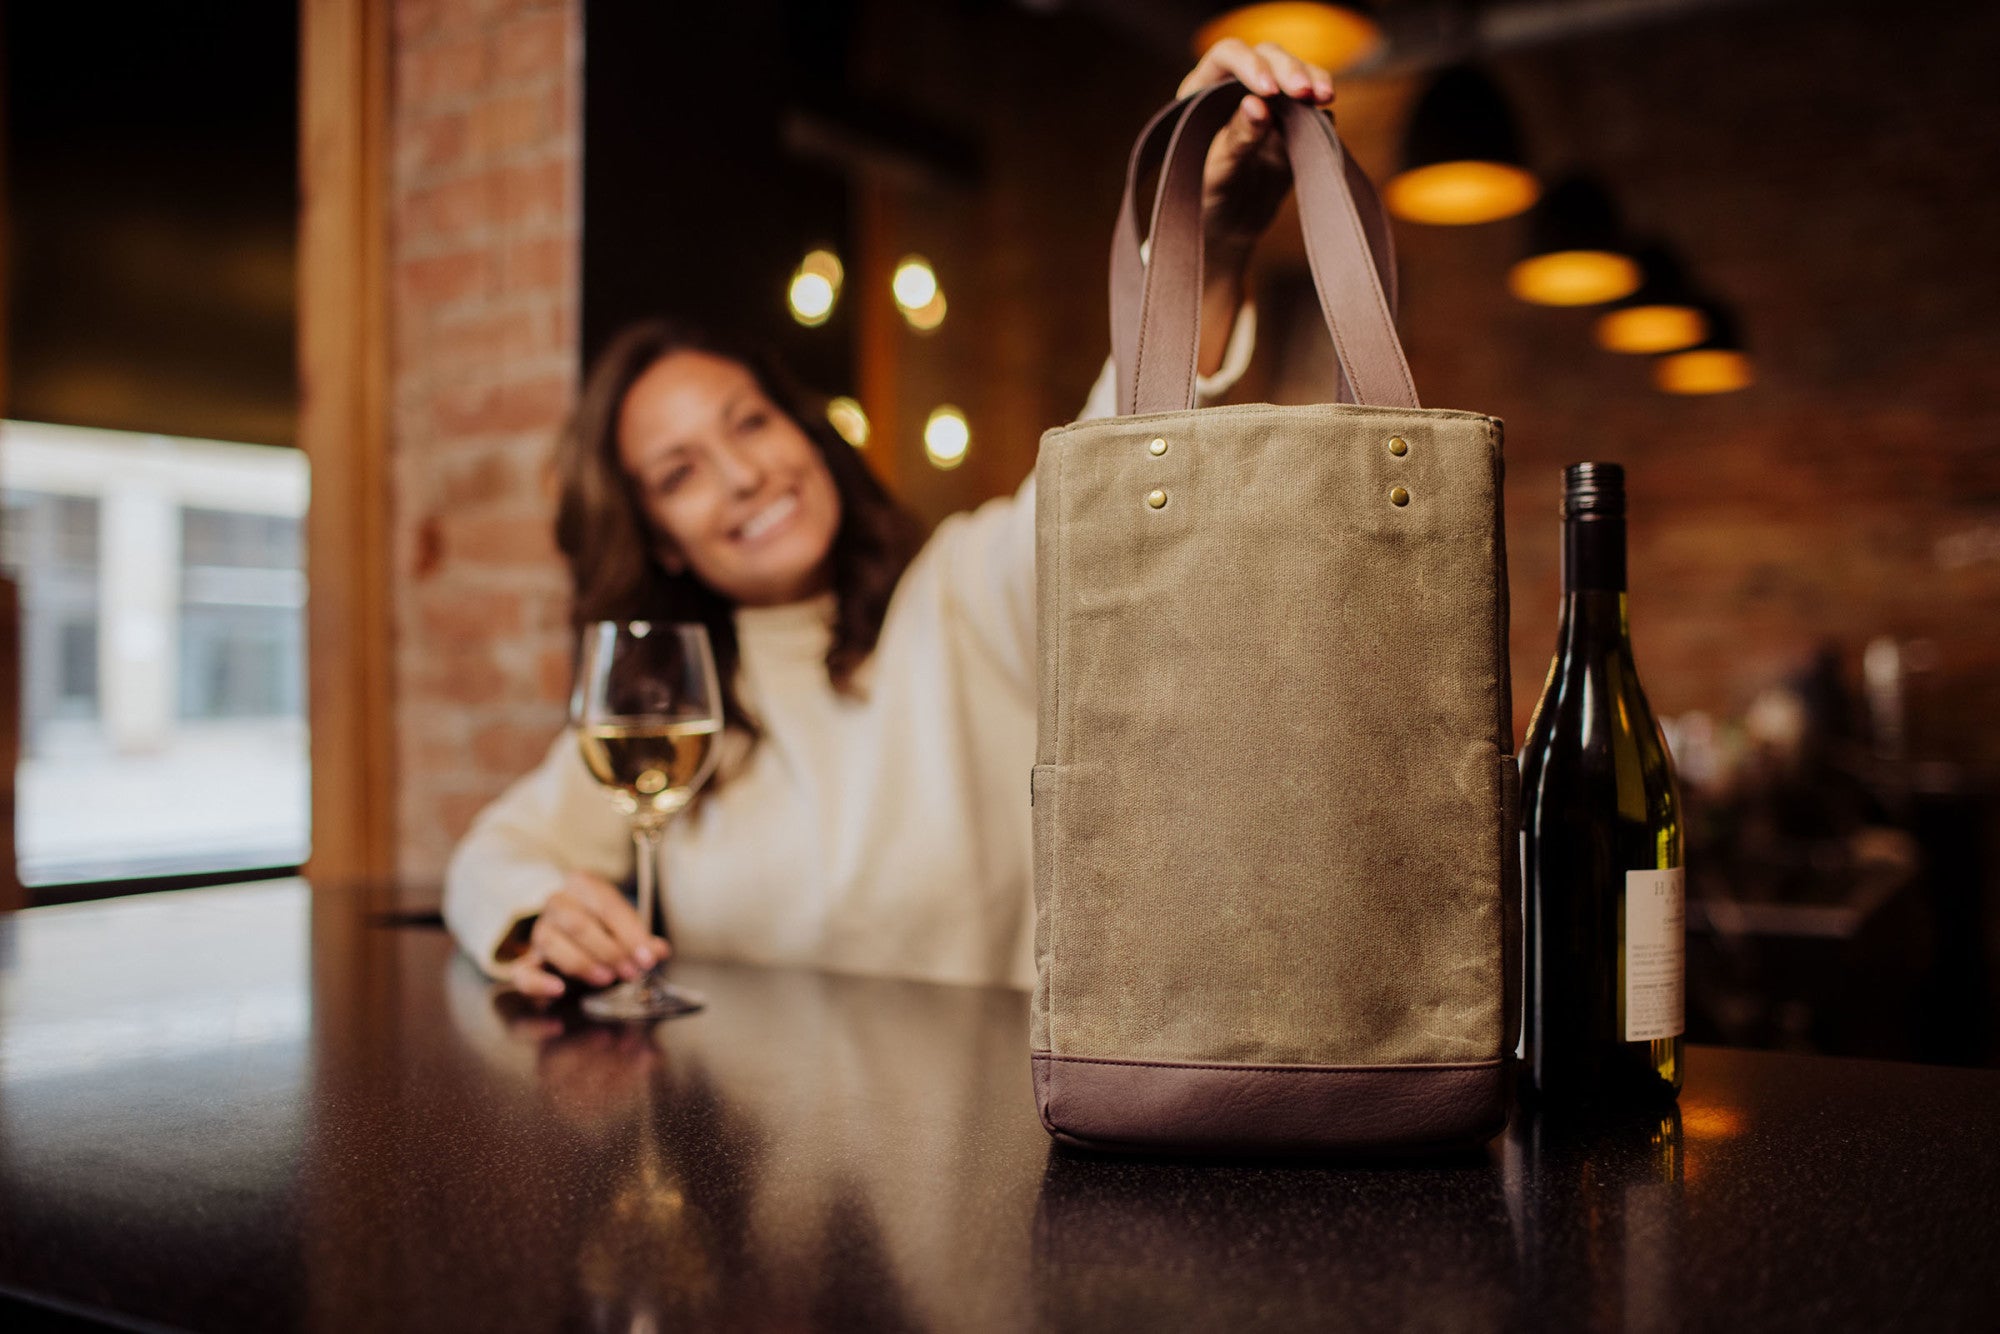 Bottle Cooler Bag Wine, Wine Picnic Backpack Pack